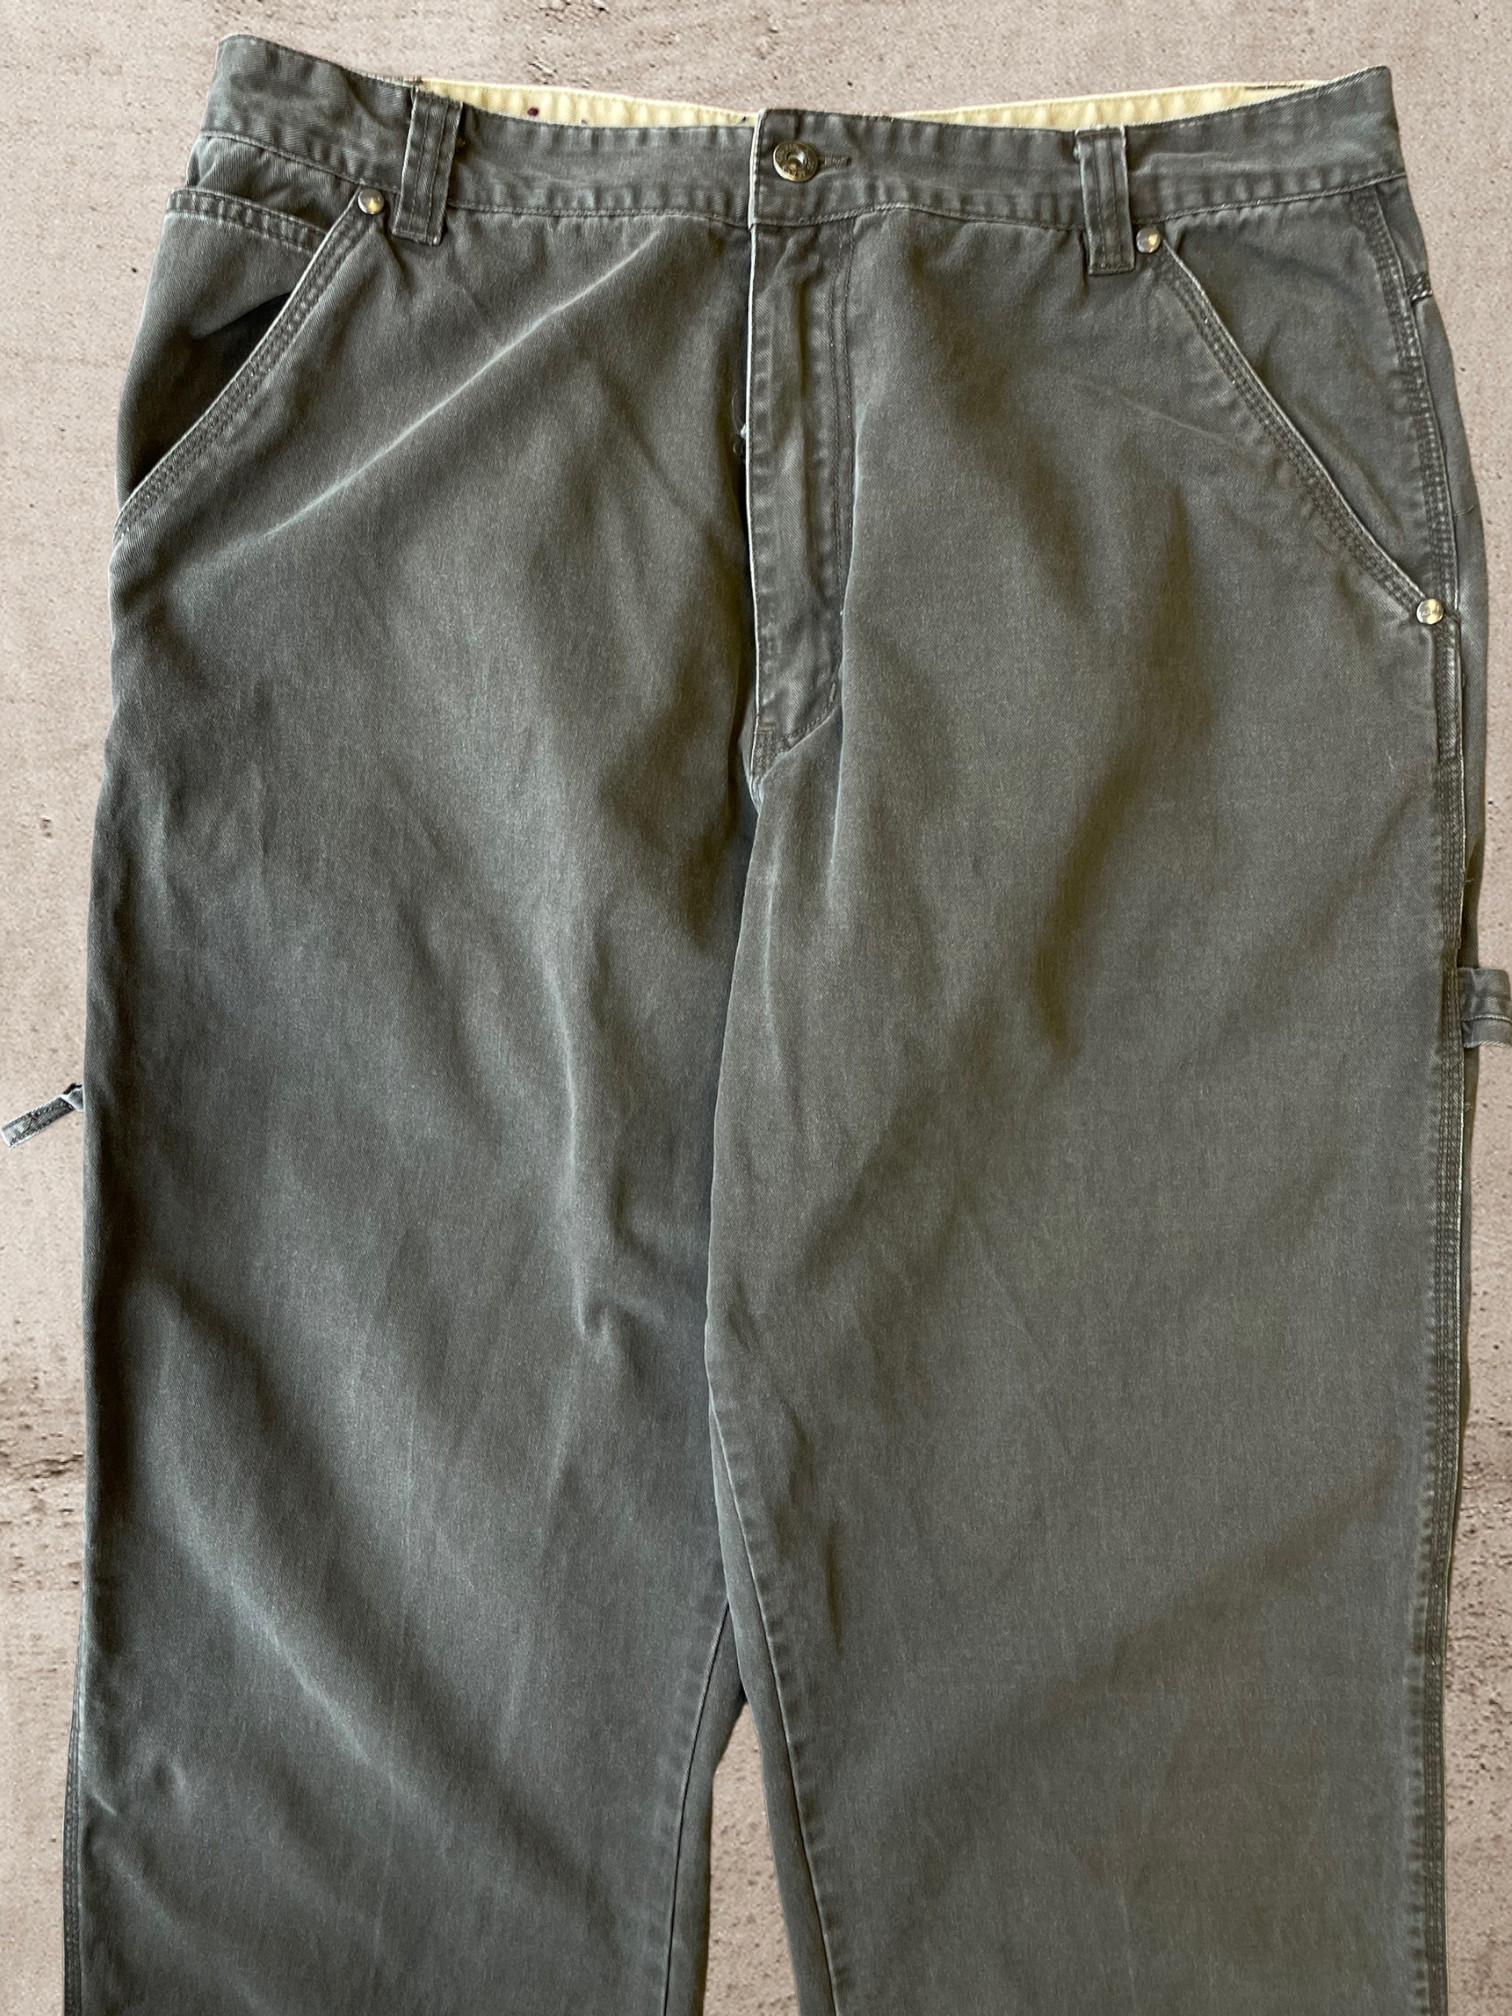 Vintage Plugg Co. Carpenter Pants - 34x32